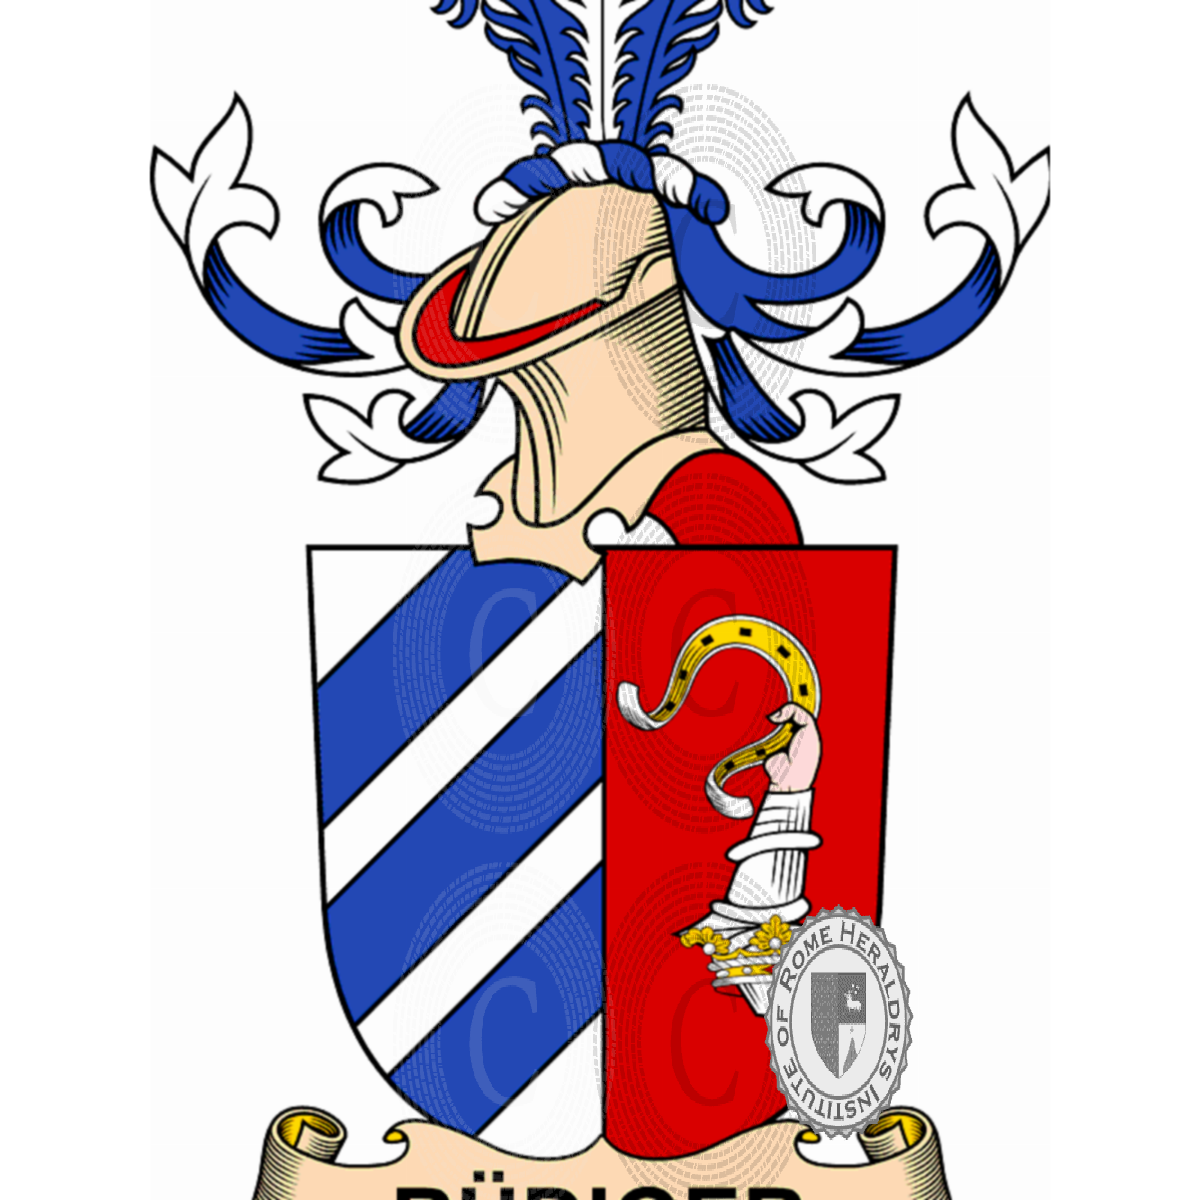 Wappen der FamilieRüdiger